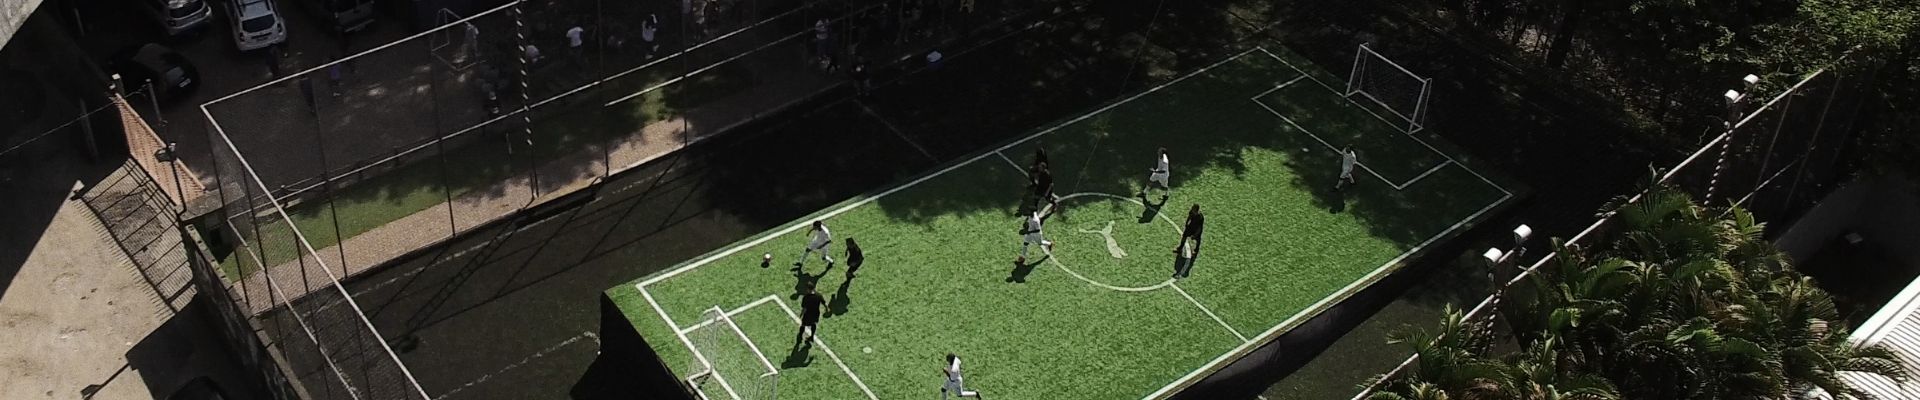 Puma lança iniciativa “Joga Na Subida”, em prol da visibilidade do futebol feminino